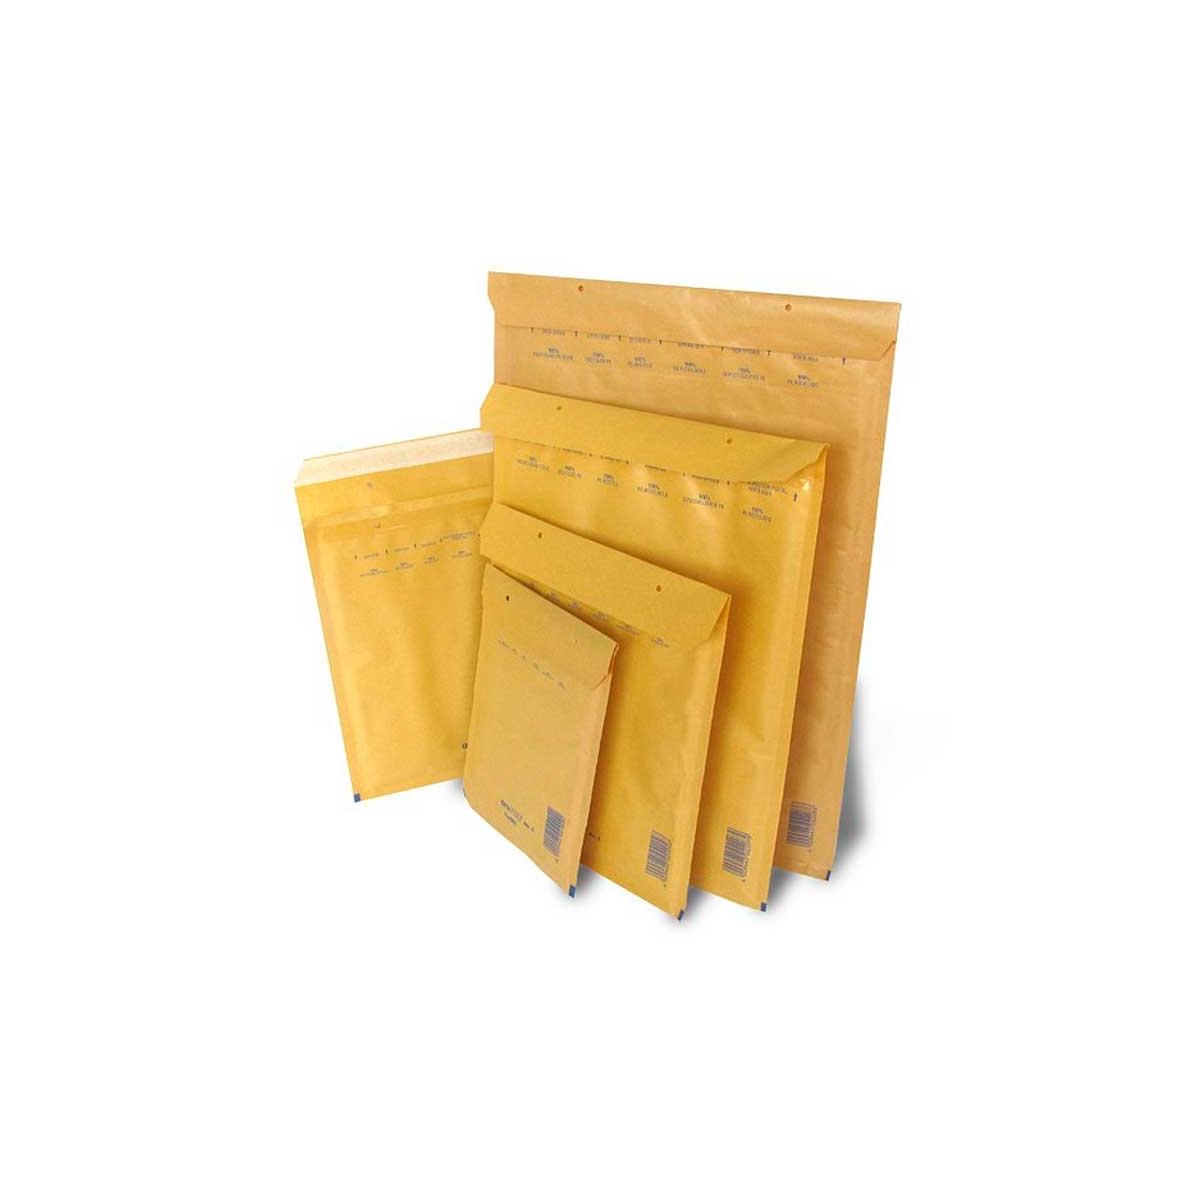 Blasetti sacboll carta avana certificata fsc - sacboll h - formato esterno 290 x 420 mm - formato interno 260 x 360 mm